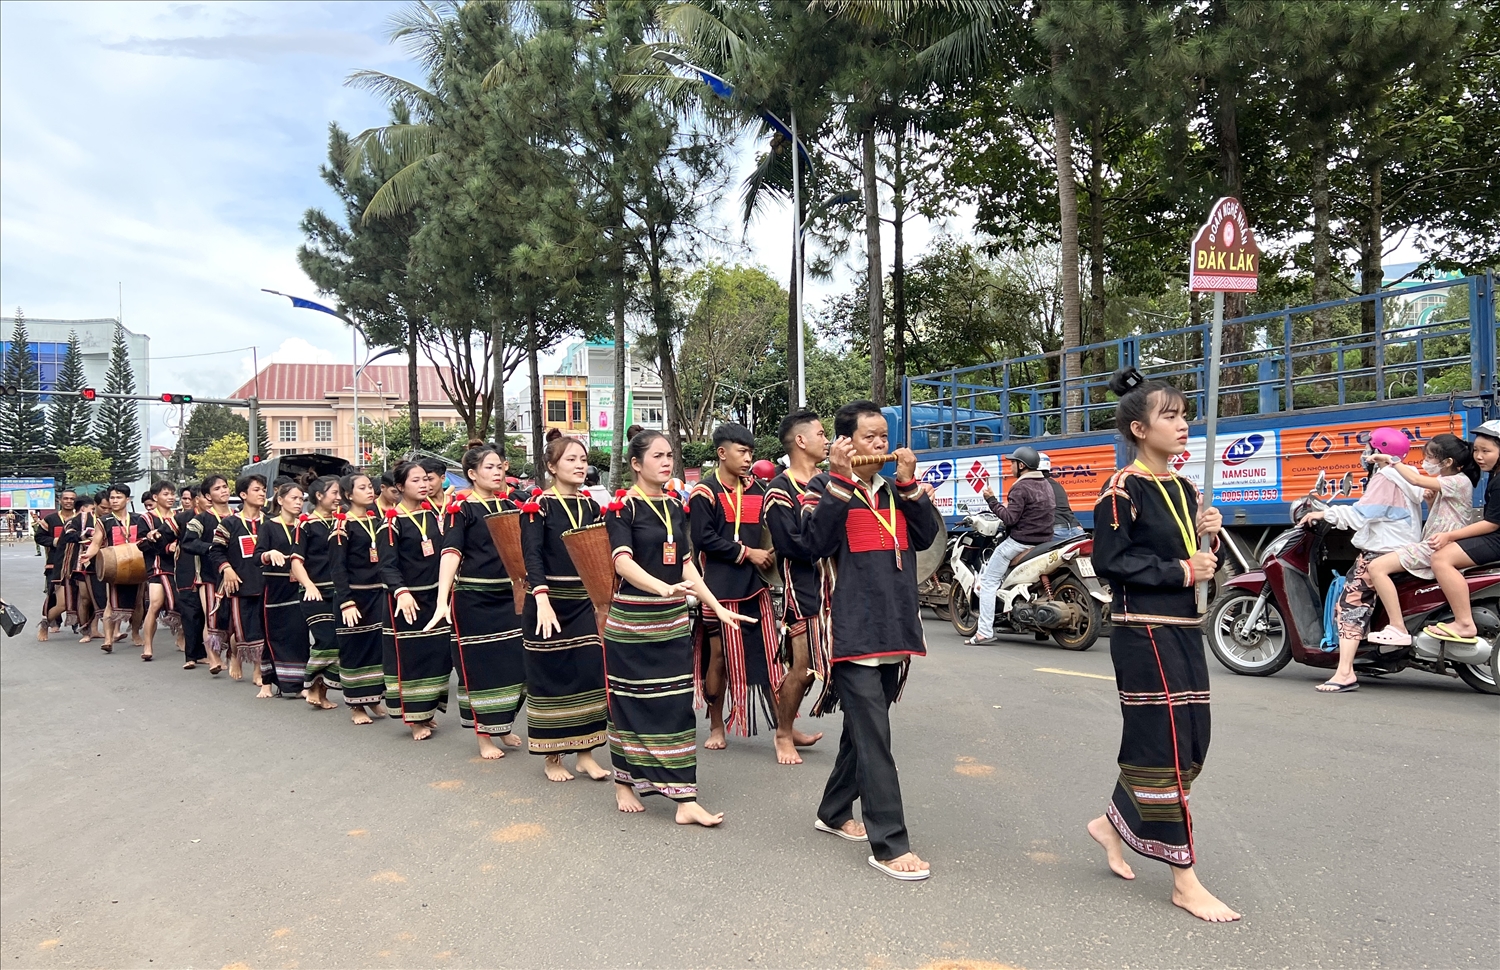 hơn 1.000 nghệ nhân đến từ 5 tỉnh Tây Nguyên tham gia trình diễn lễ hội đường phố đã thu hút đông đảo người dân, du khách tới chiêm ngưỡng